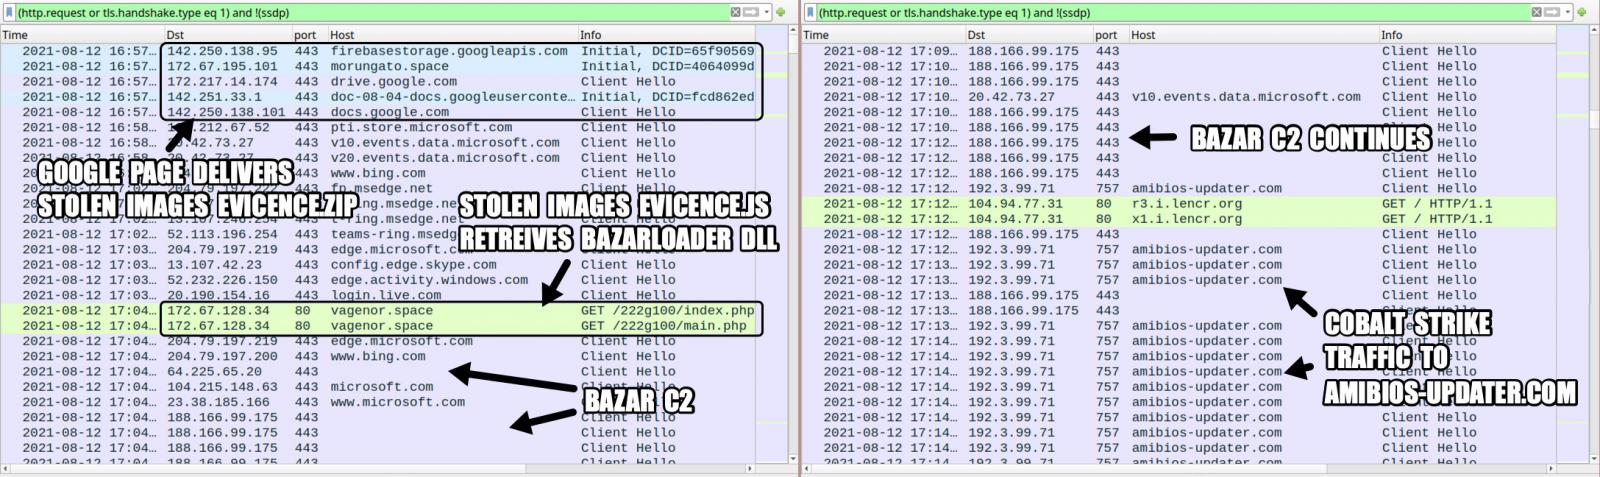 BazaLoader delivered through fake DMCA infringement notifications